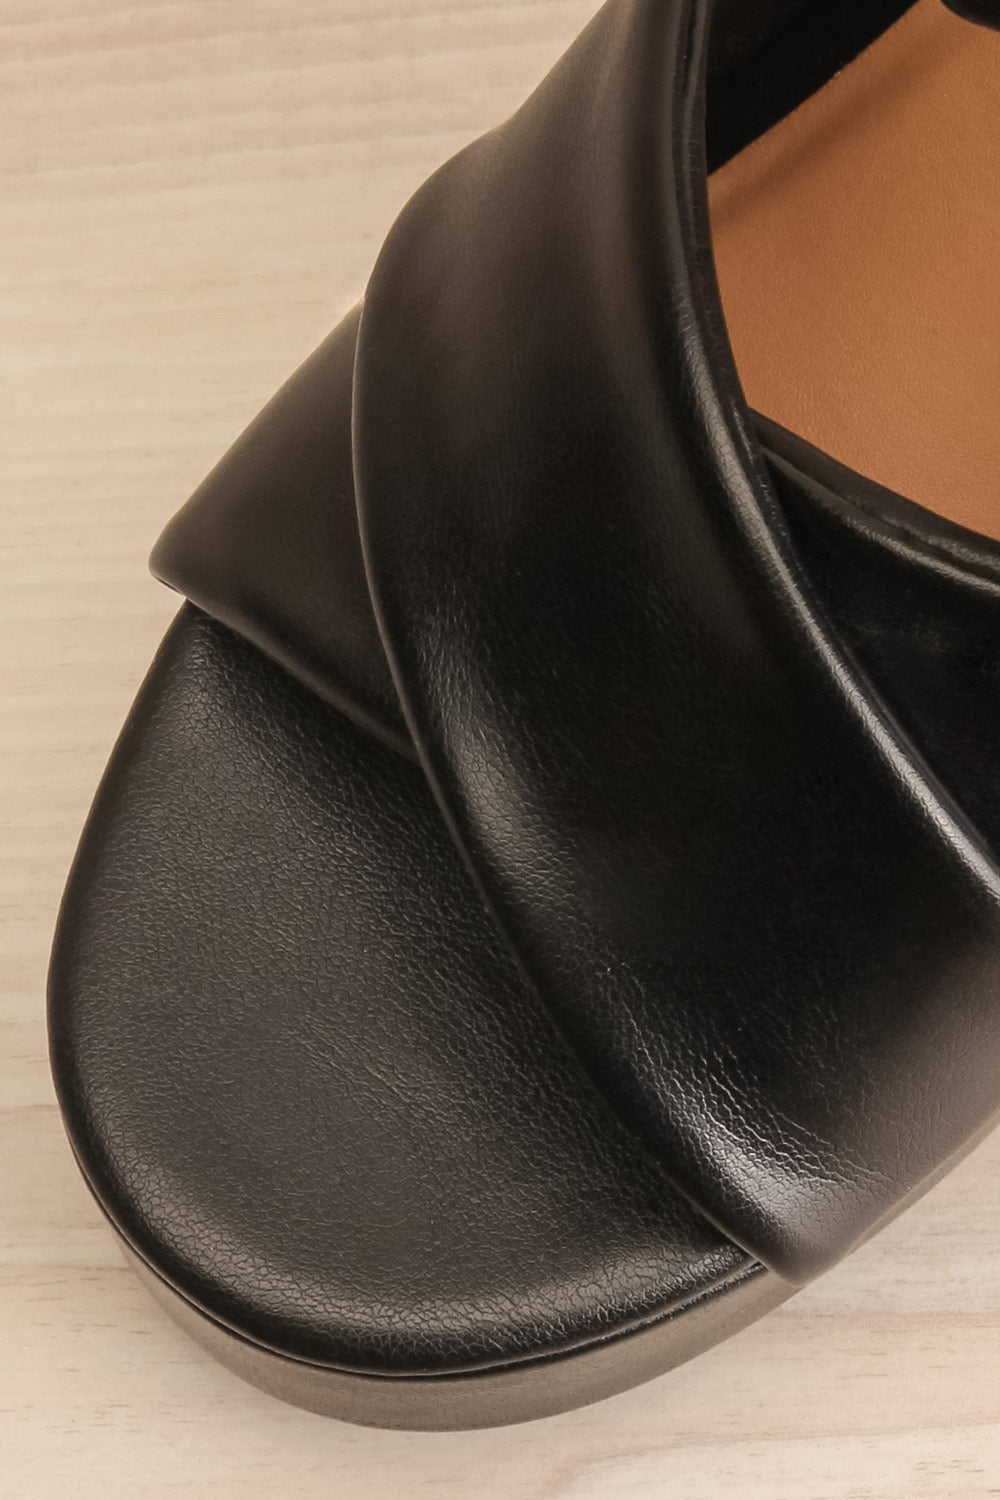 Miami Black Platform Heeled Sandals | La petite garçonne flat close-up